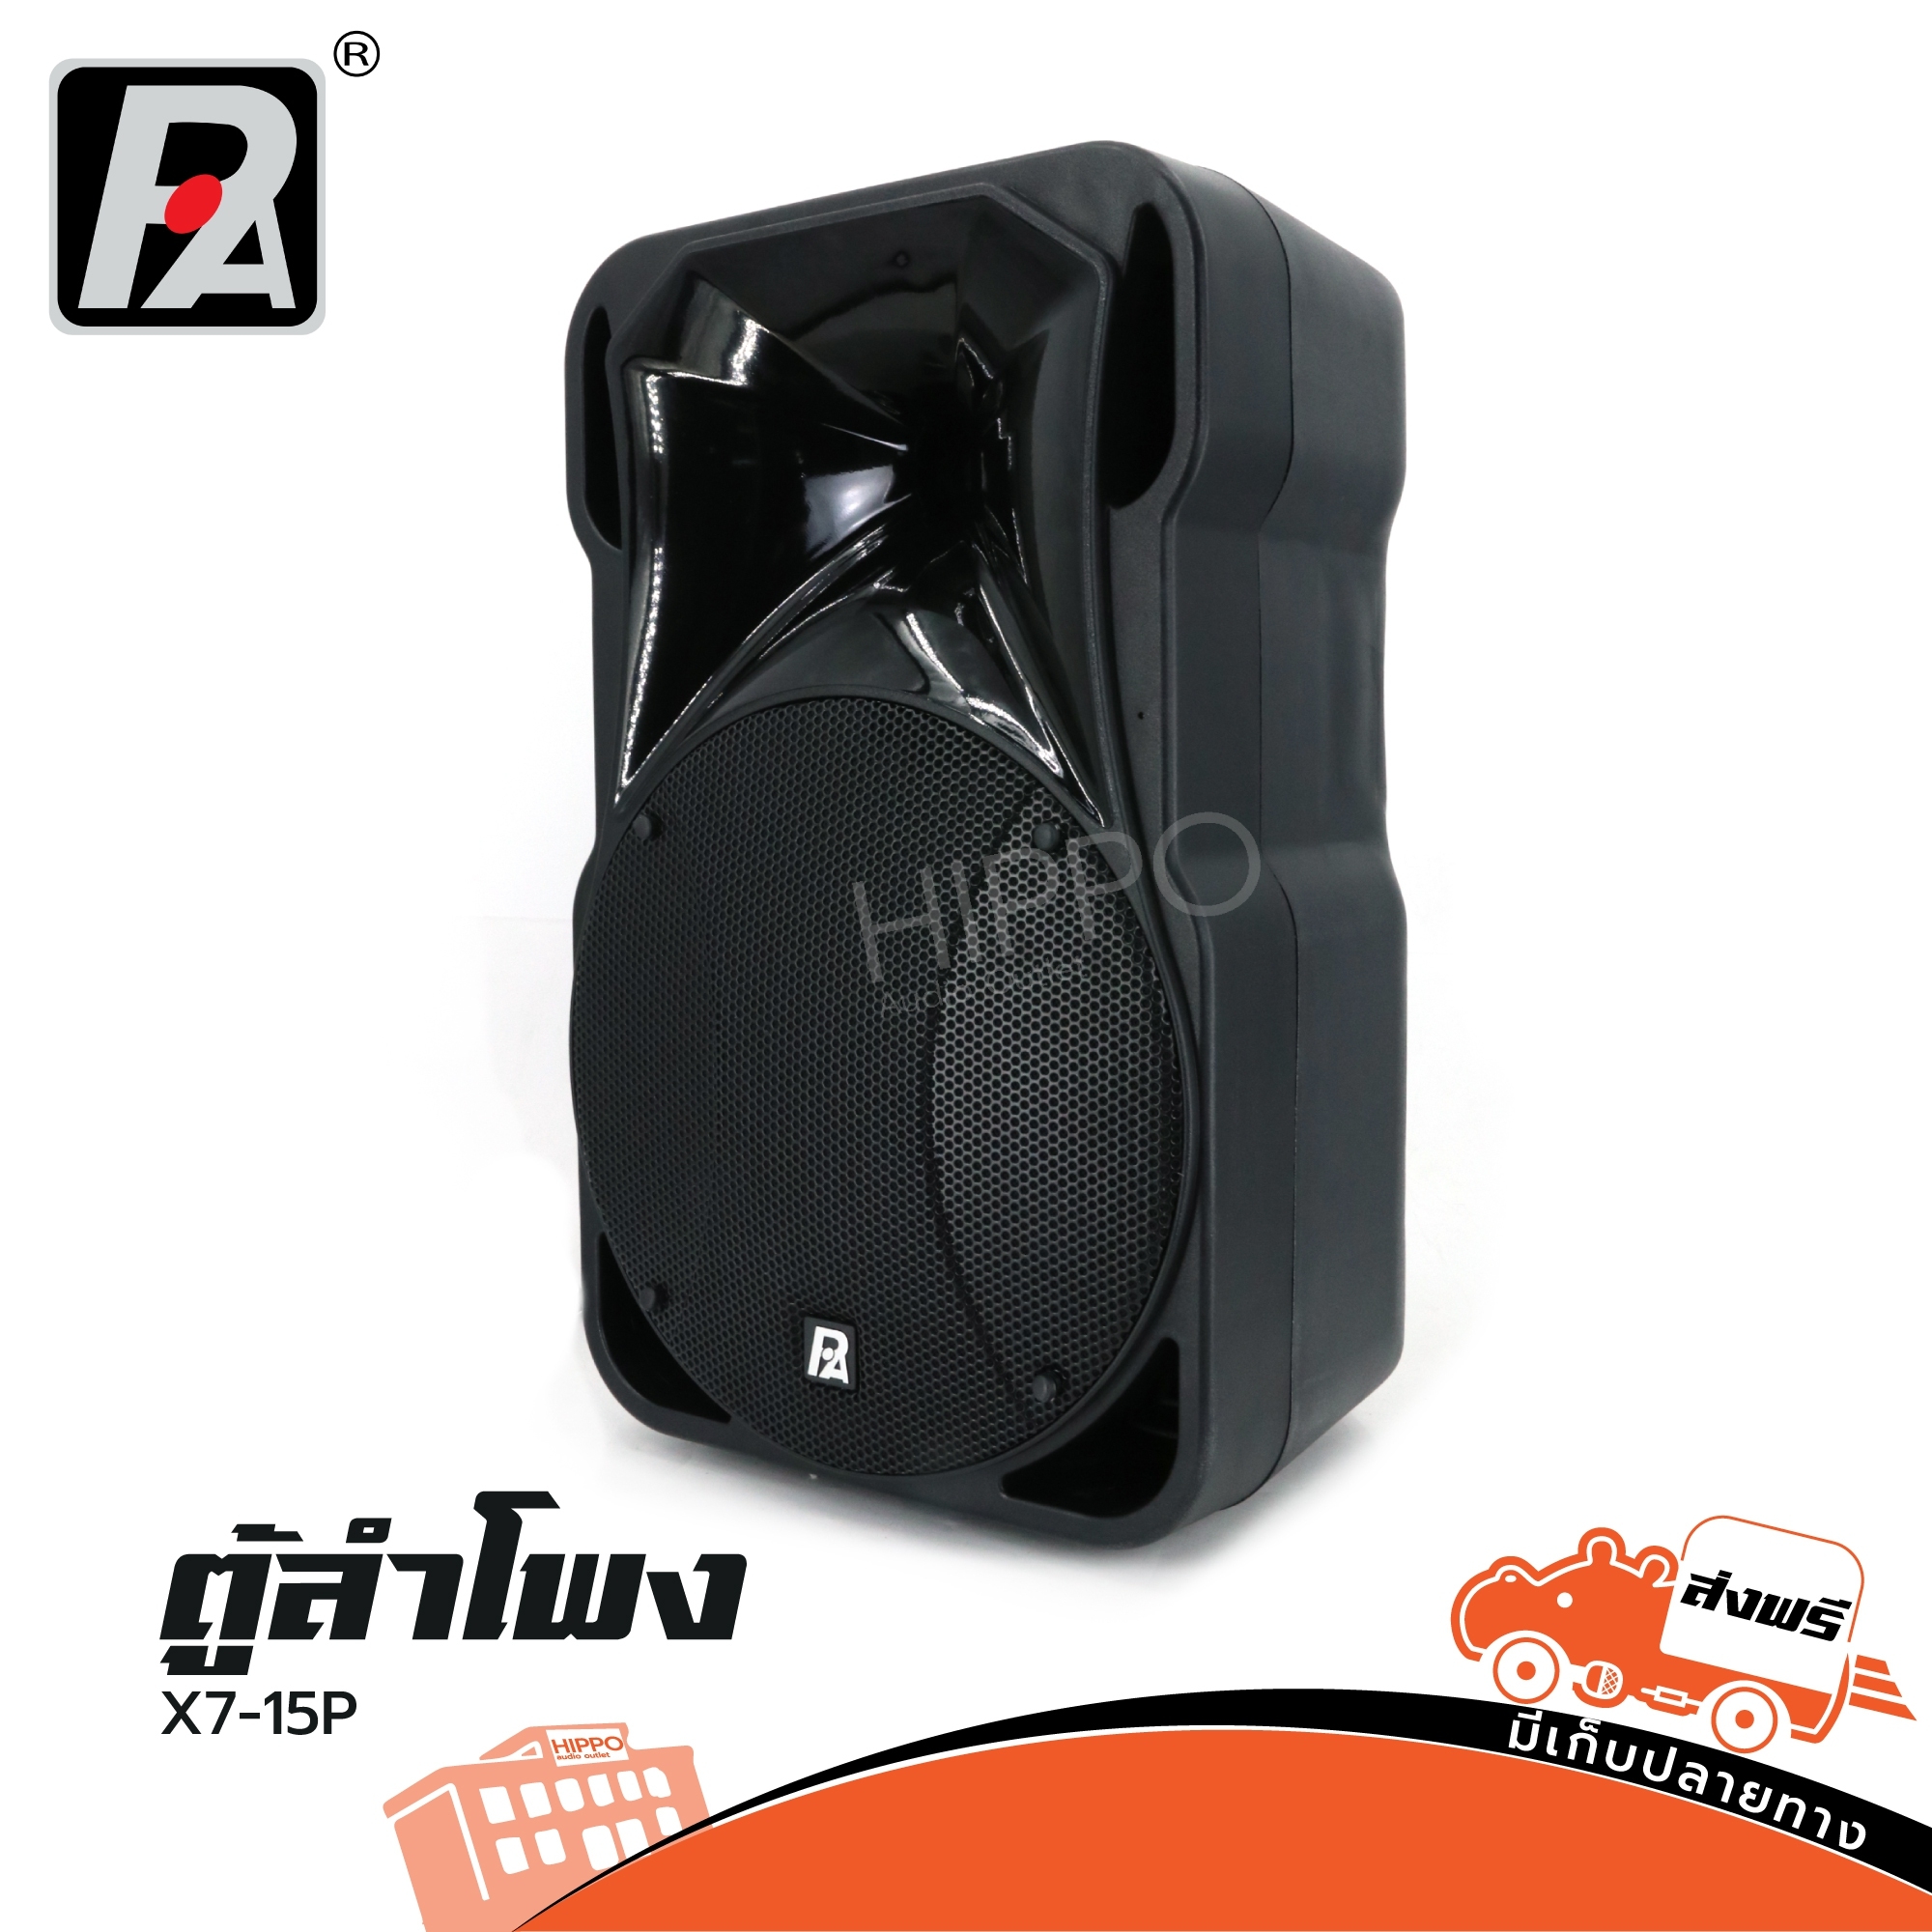 ตู้ลำโพง P.audio รุ่น X7 15P ตู้ลำโพงสองทาง 15 นิ้ว ตู้ลำโพง Passive Speaker Hippo Audio ฮิปโป ออดิโอ